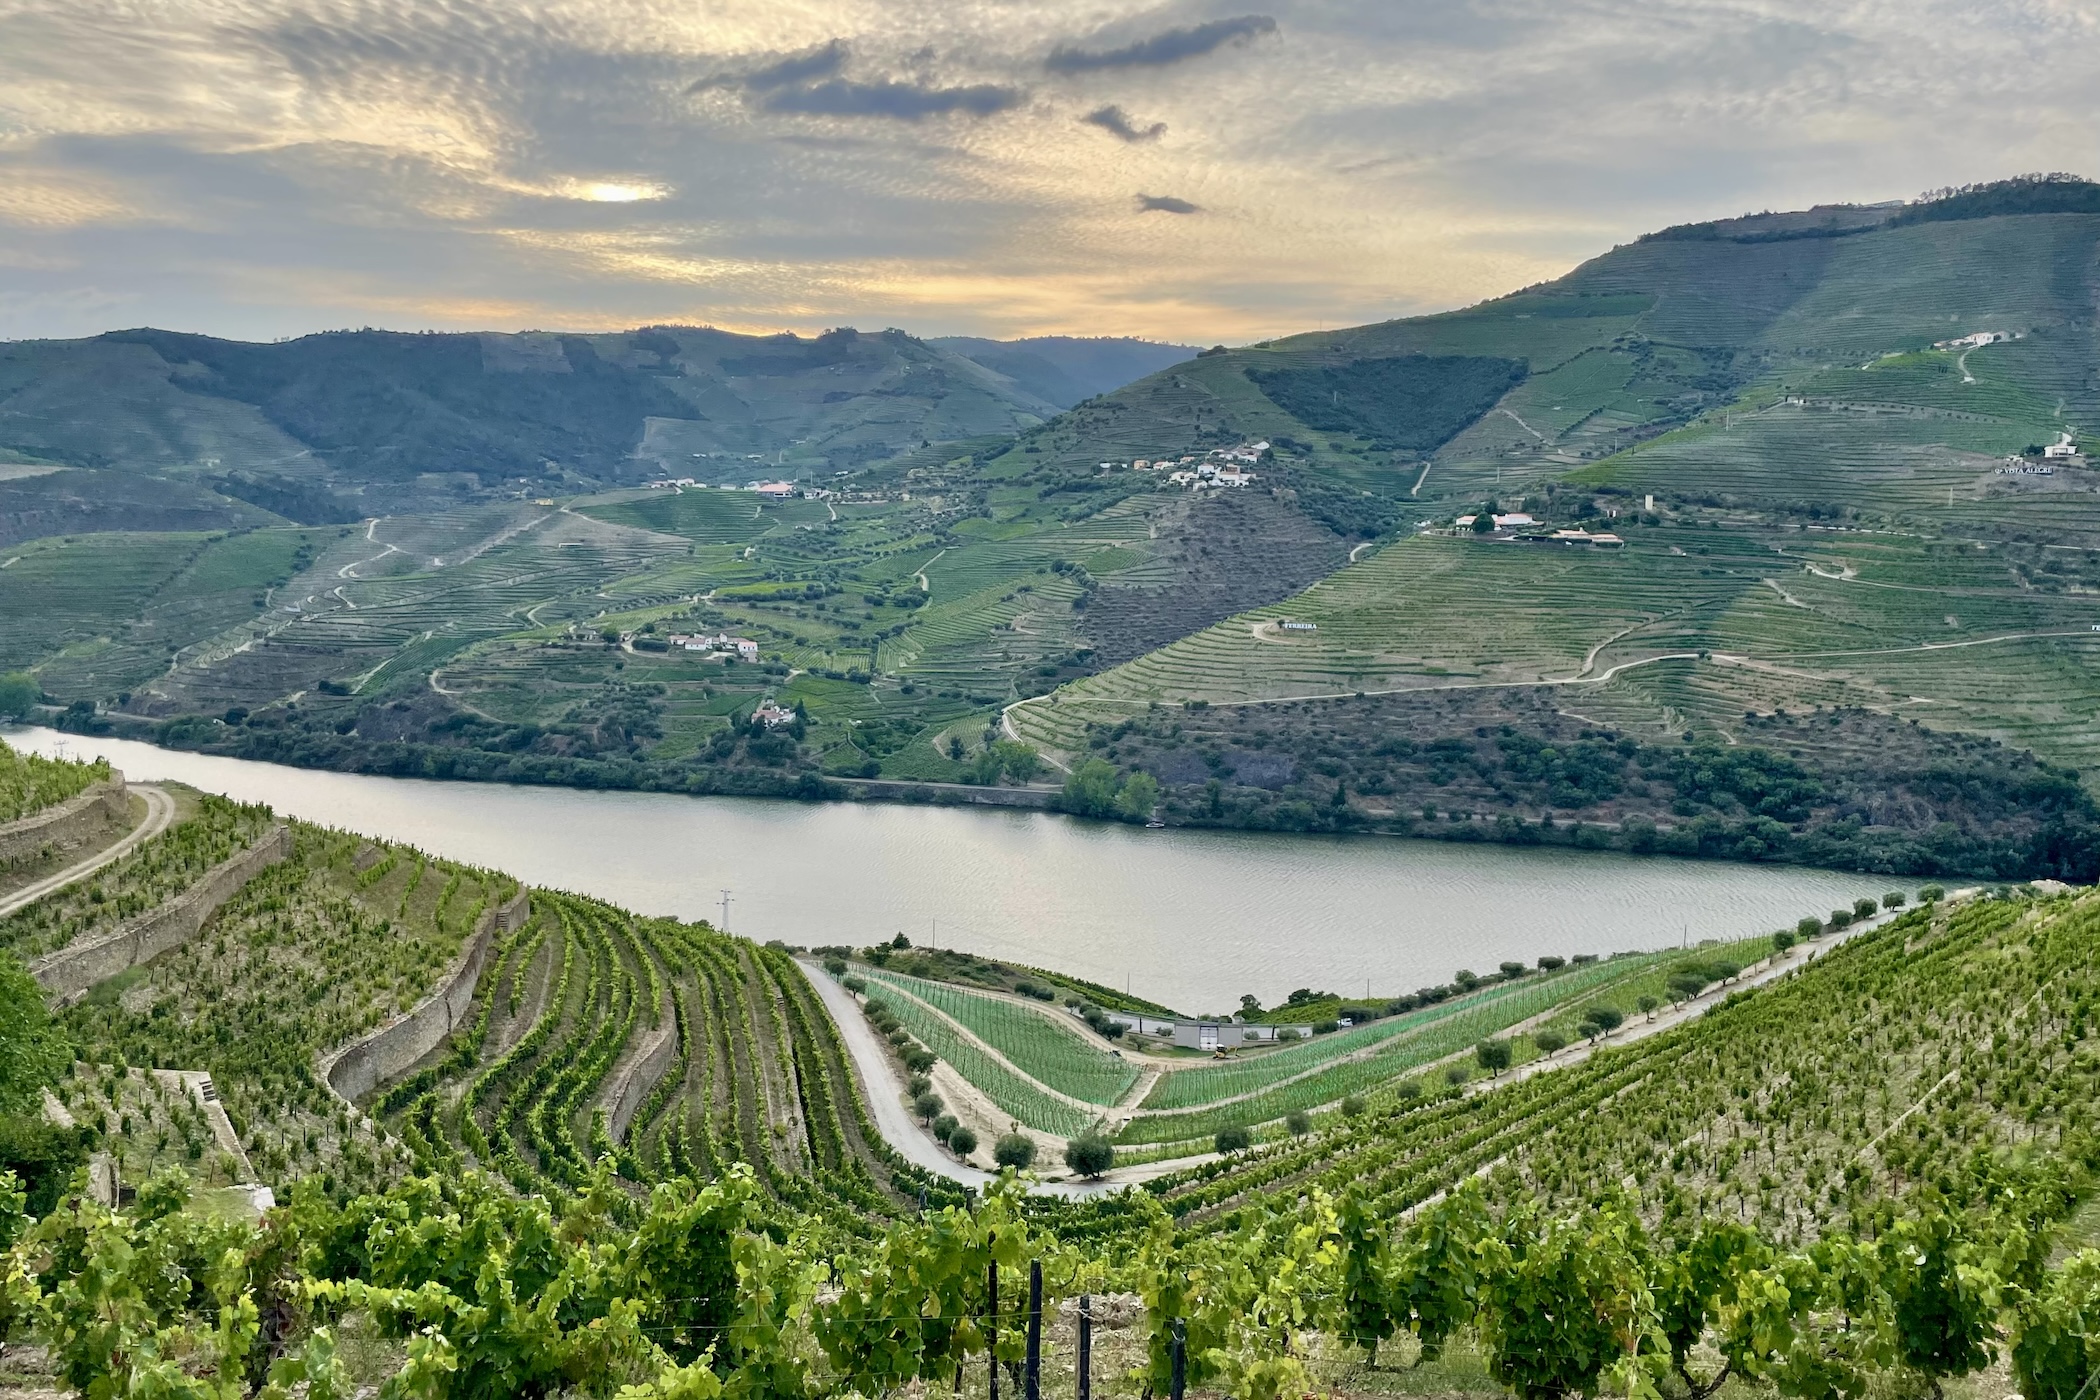 Doen in de Douro vallei de leukste tips voor deze wijnstreek